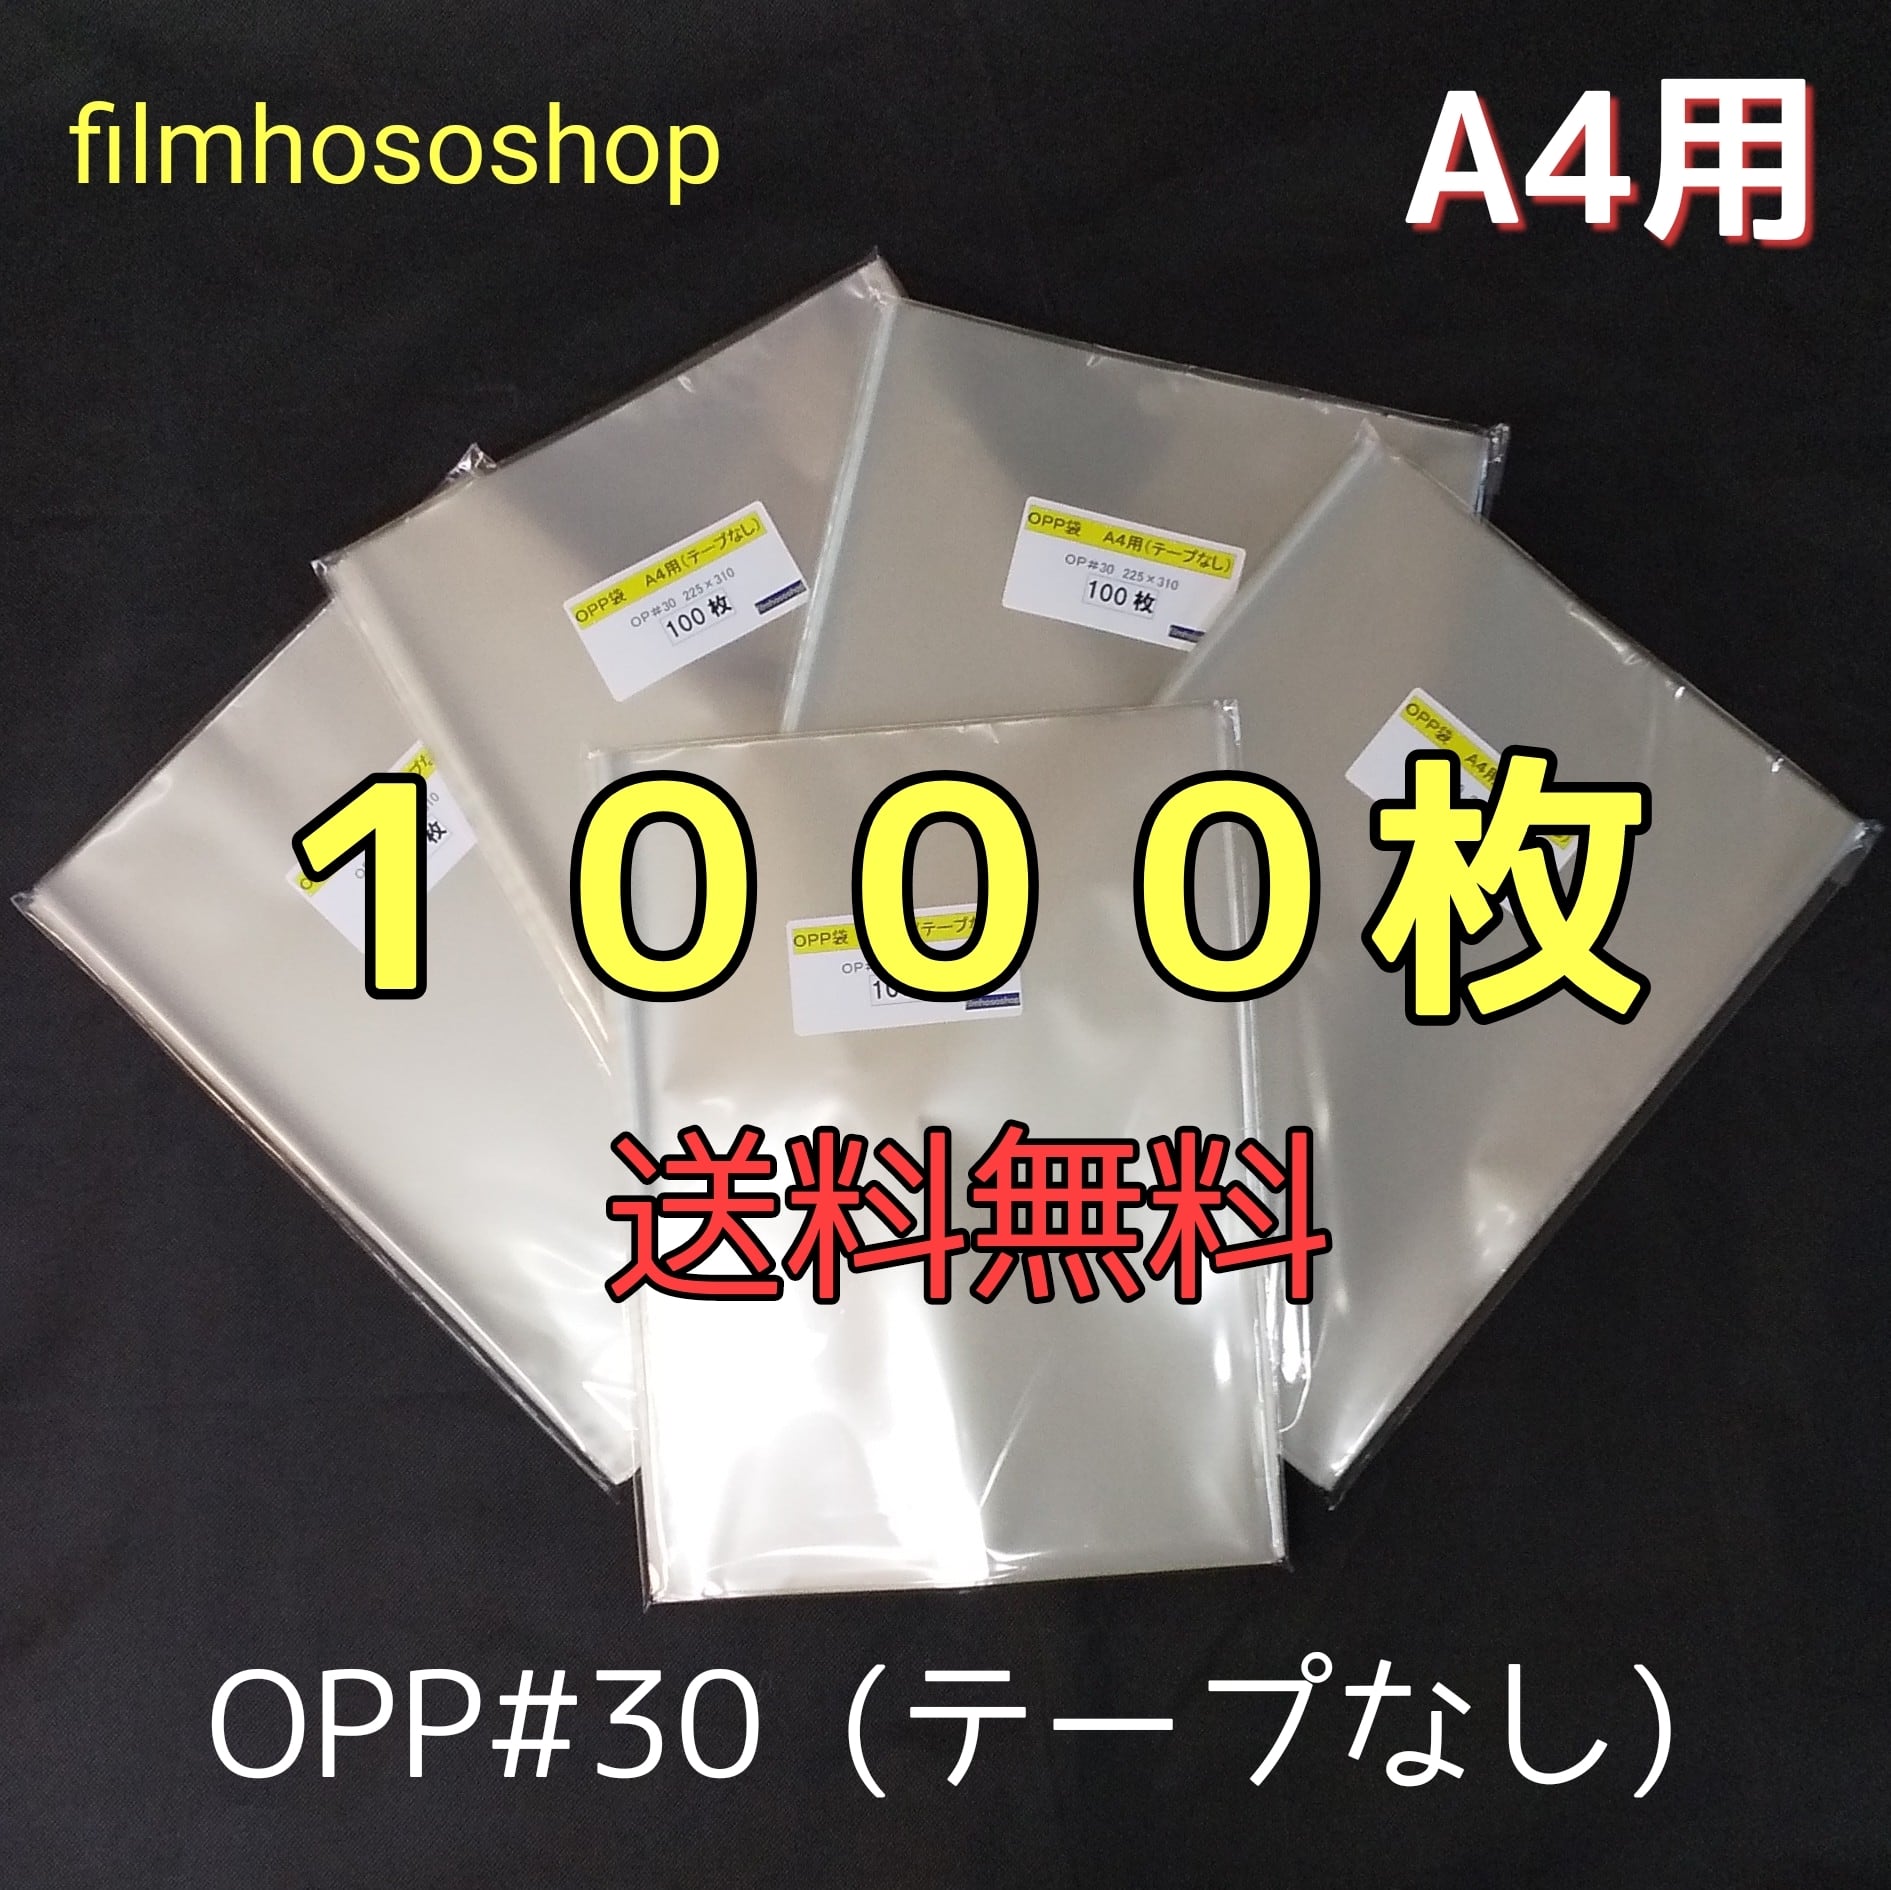 OPP袋 ラッピング A4サイズ 300枚 透明ビニール袋 テープなし